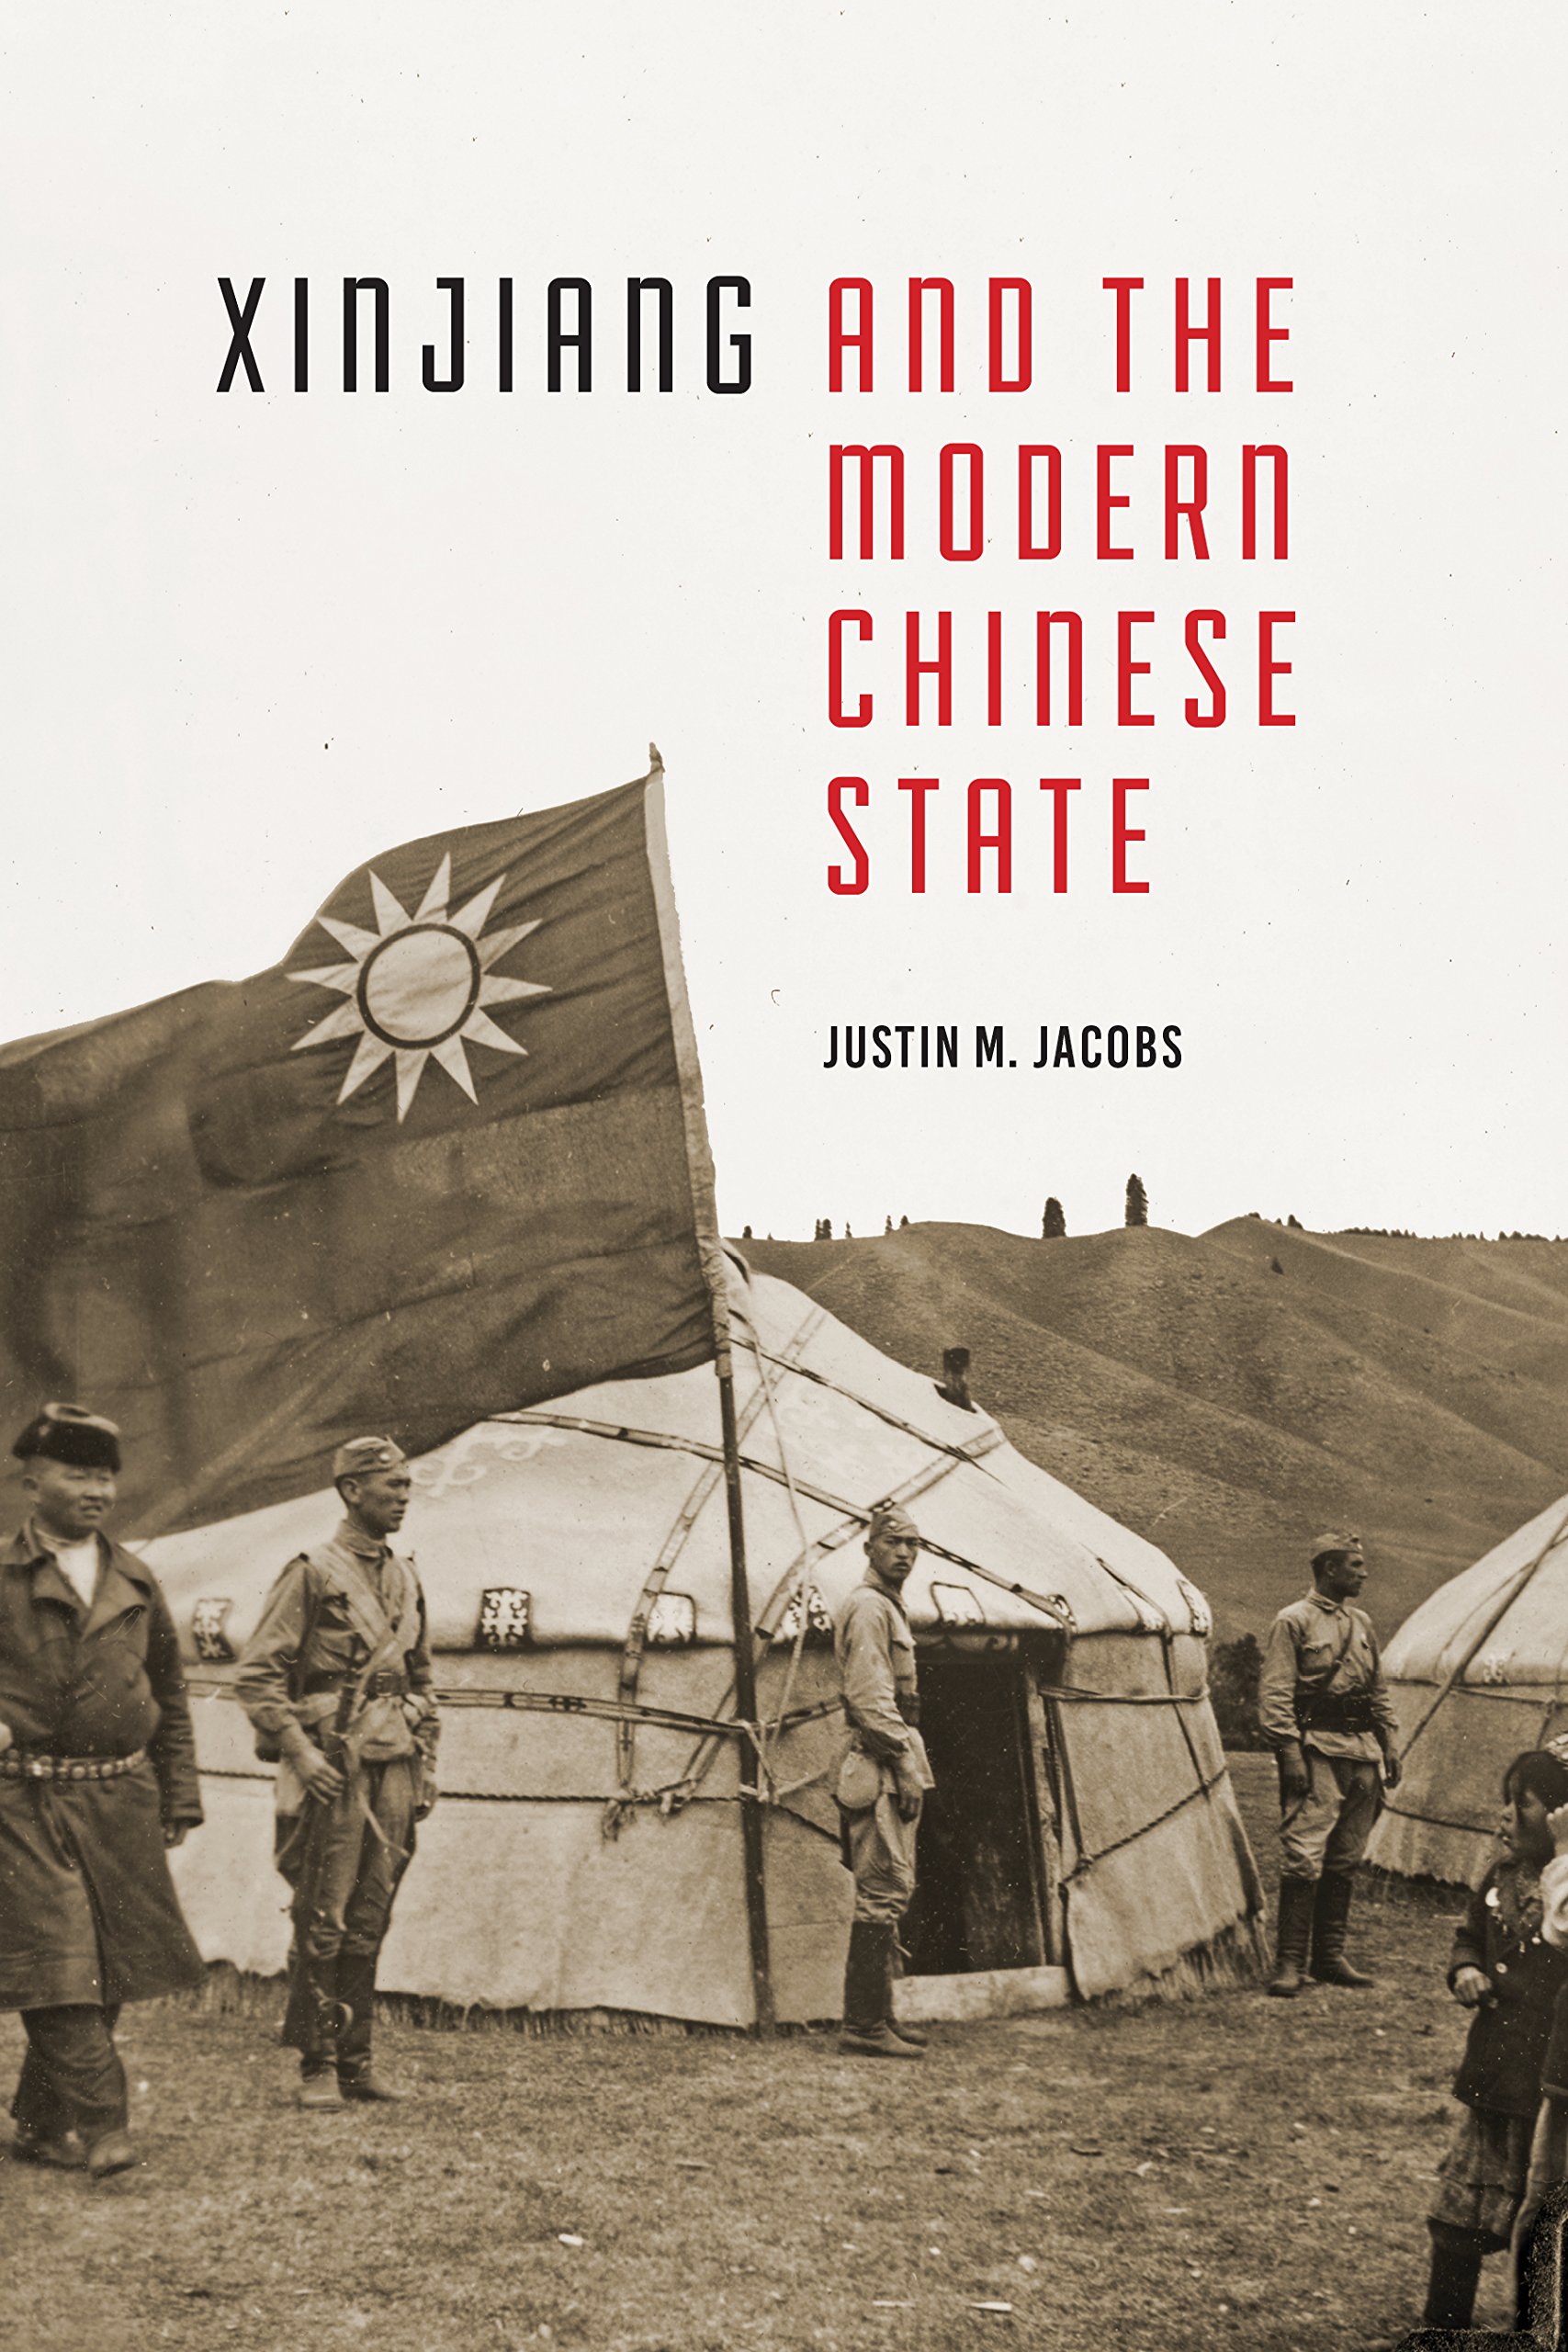 Xinjiang and the Modern Chinese State (University of Washington Press, 2016).